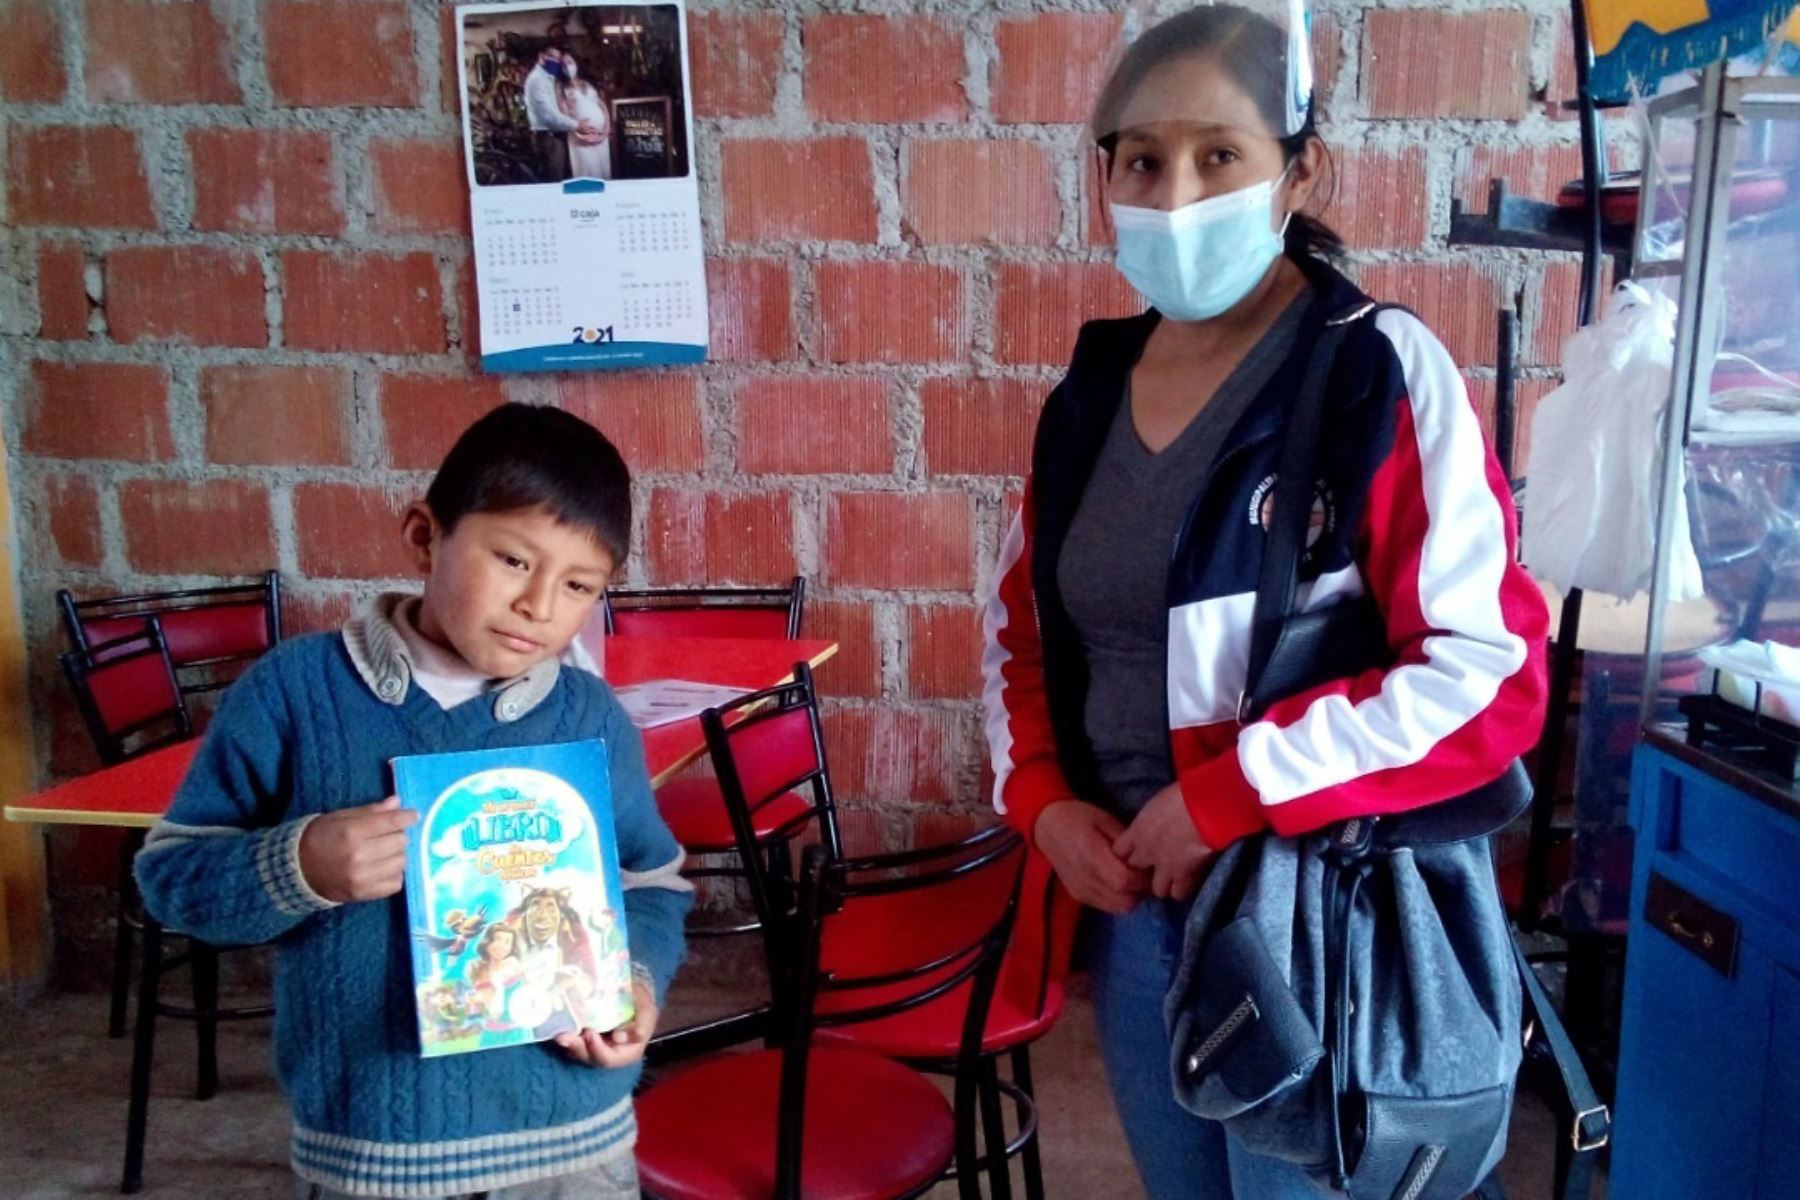 Modernos chasquis entregan libros a escolares que viven en comunidades del distrito de Poroy, en Cusco, gracias a proyecto Chasqui Libro implementado por municipio. EFE